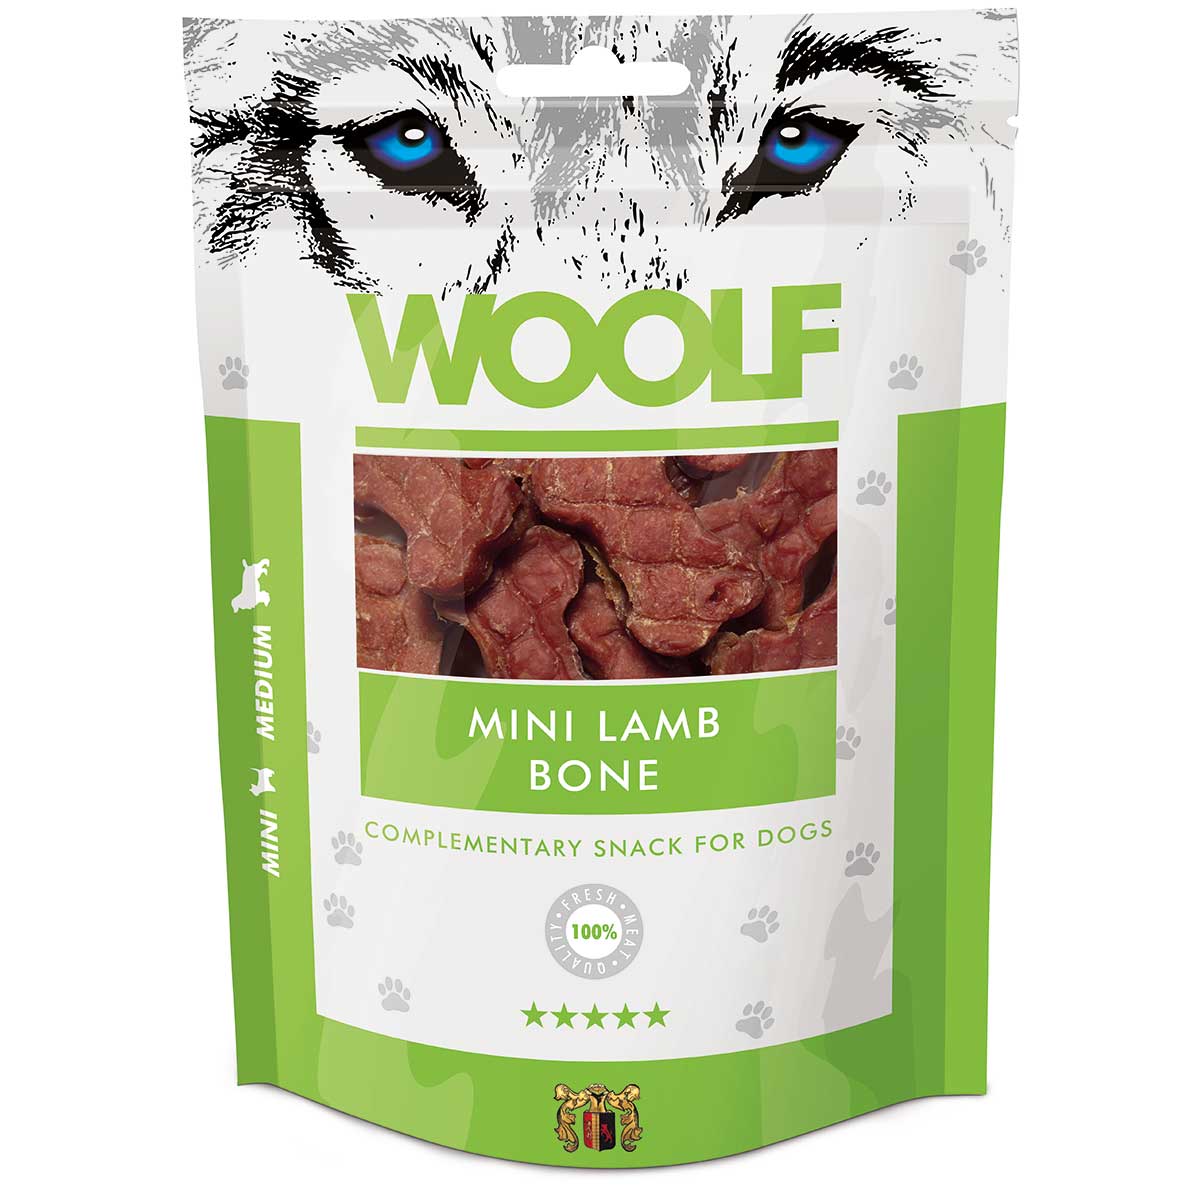 Woolf Dog treat mini lamb bone